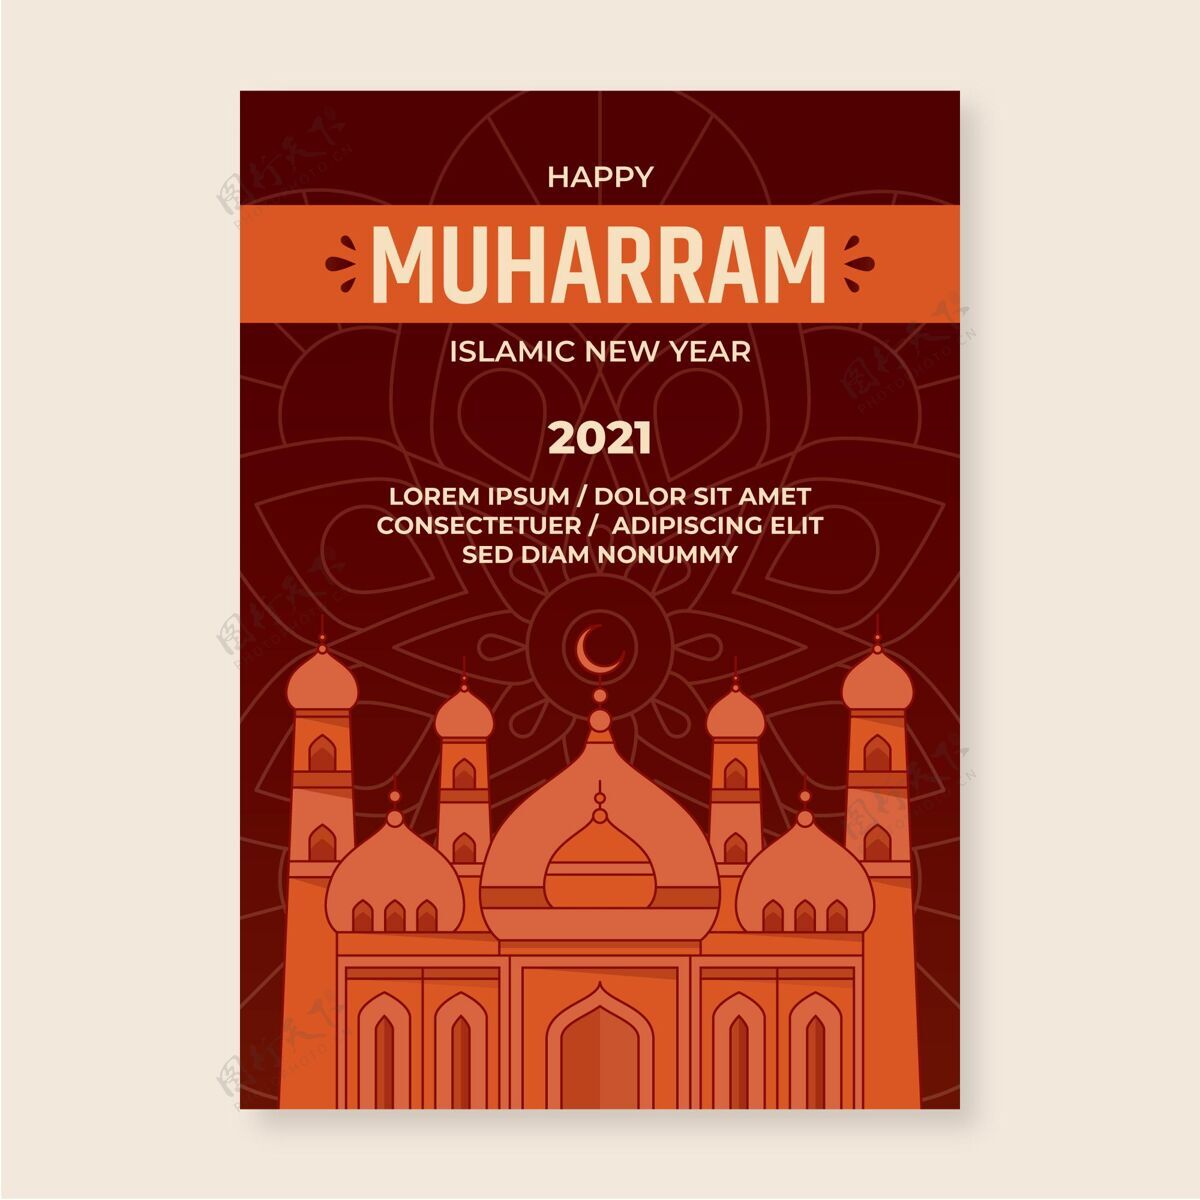 阿拉伯语平面muharram垂直海报模板纪念月庆典